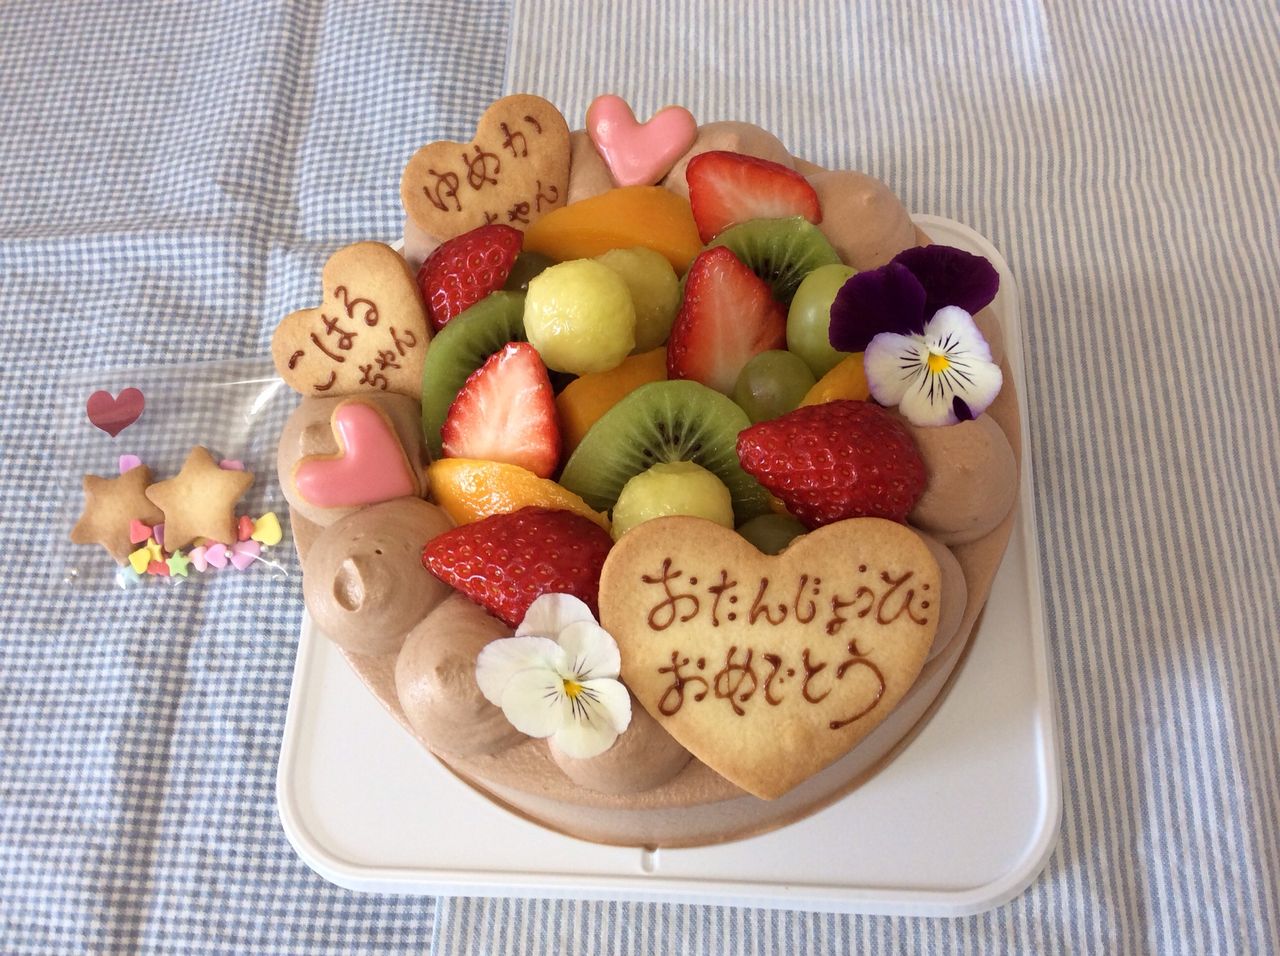 フルーツ飾りチョコレートデコレーションケーキ Rina S